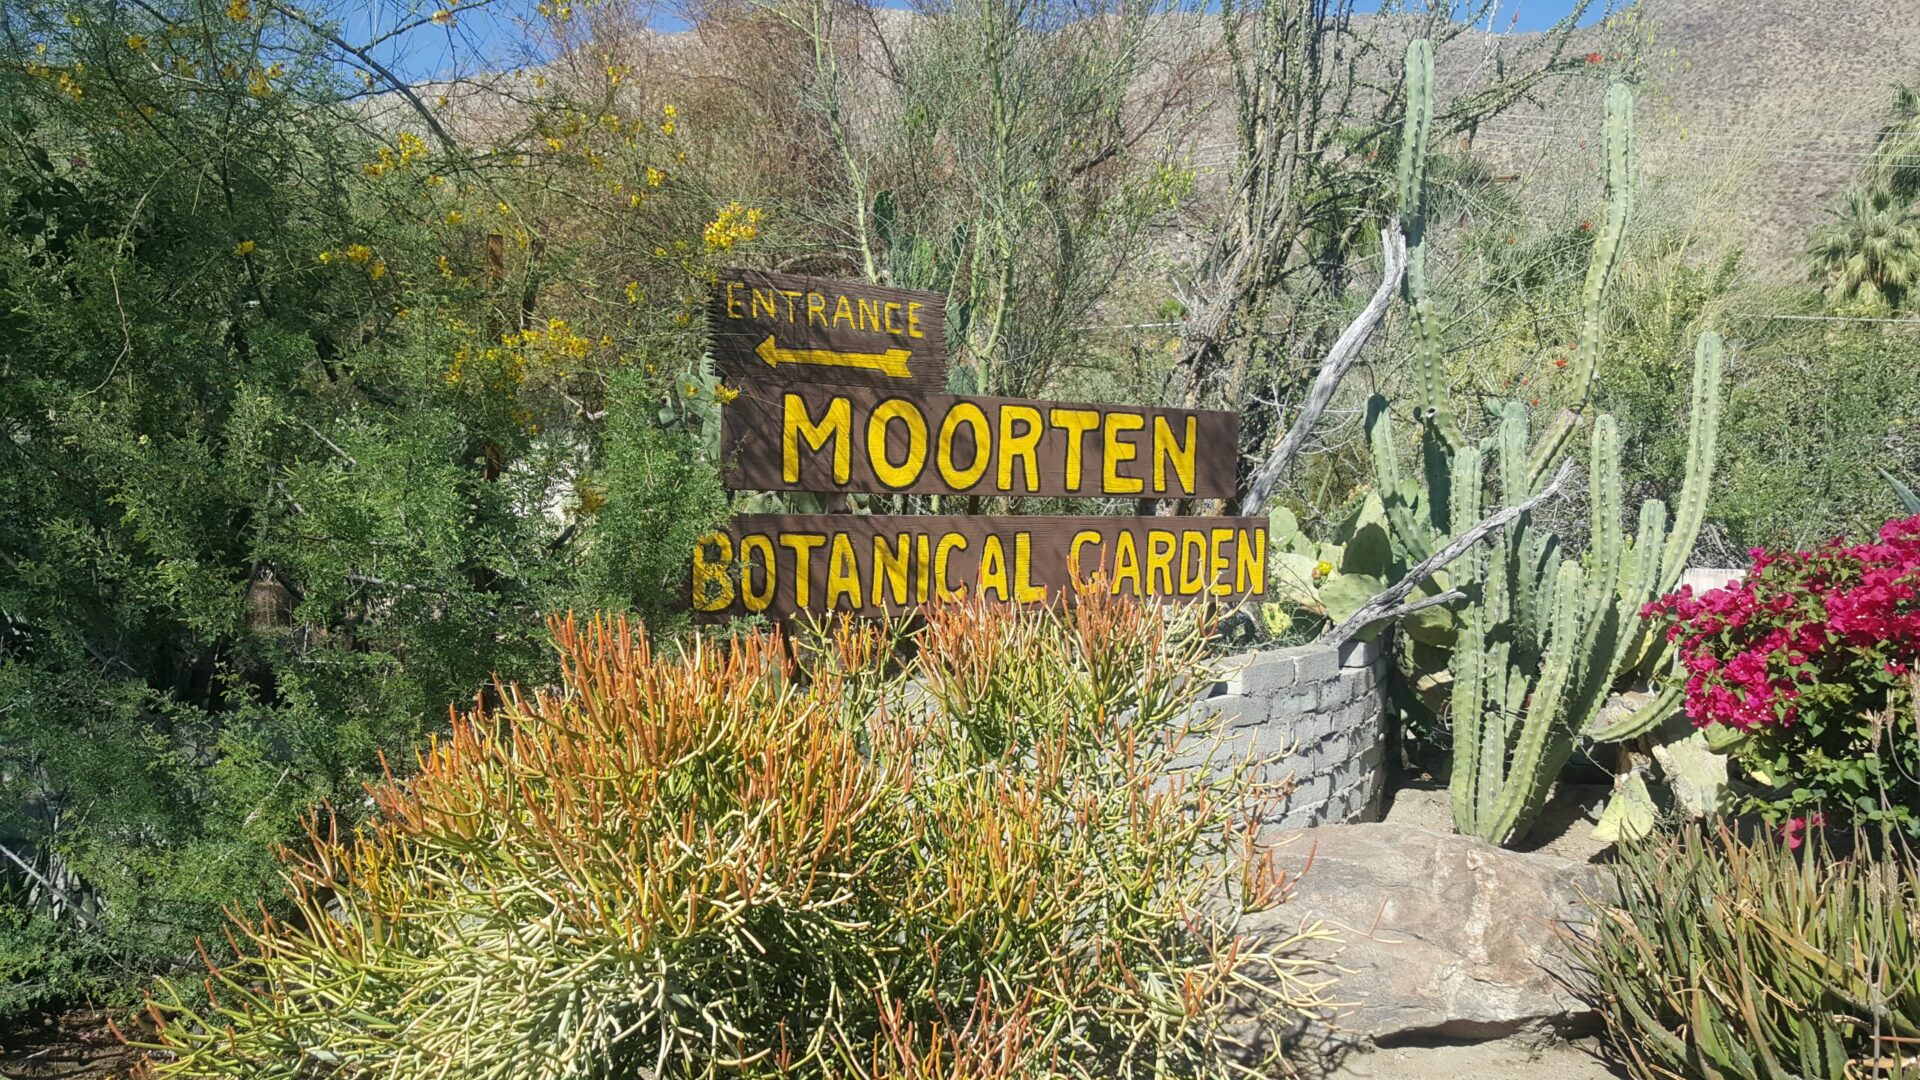 Moorten's sign